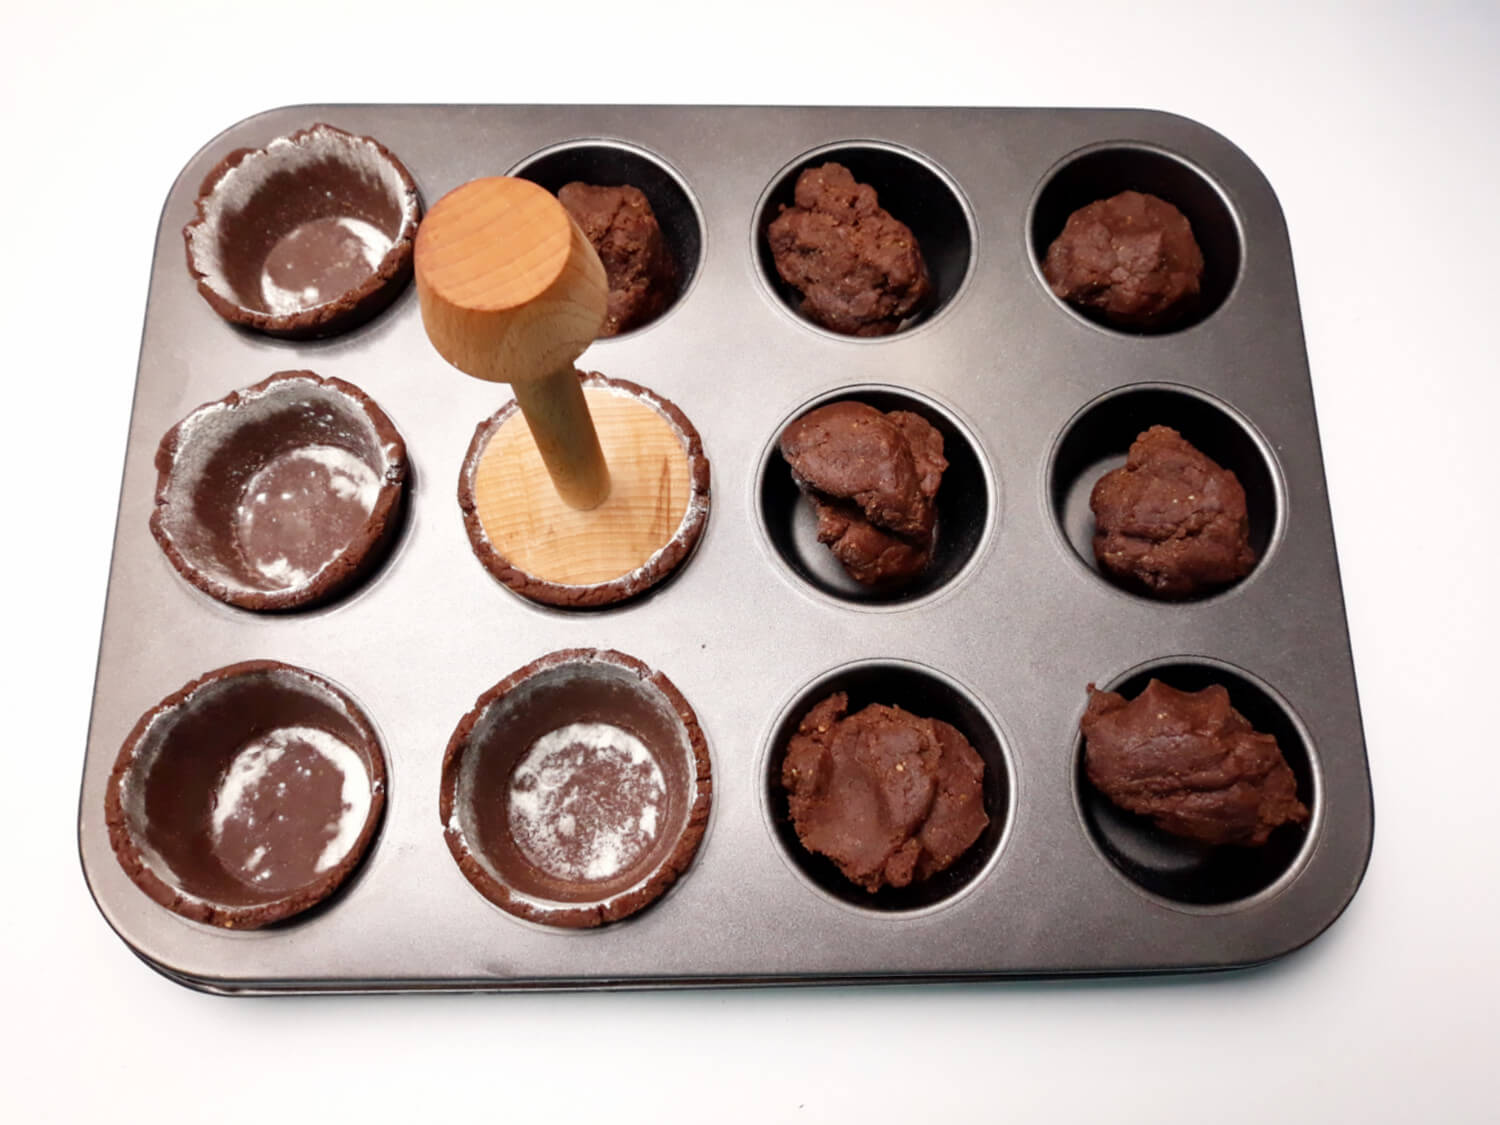 Rozpustne kruche mini tarty - solony karmel i czekolada!, tartaletki, wyklejanie foremki do muffin ciastem kruchym, forma do muffin, narzędzie do tartaletek